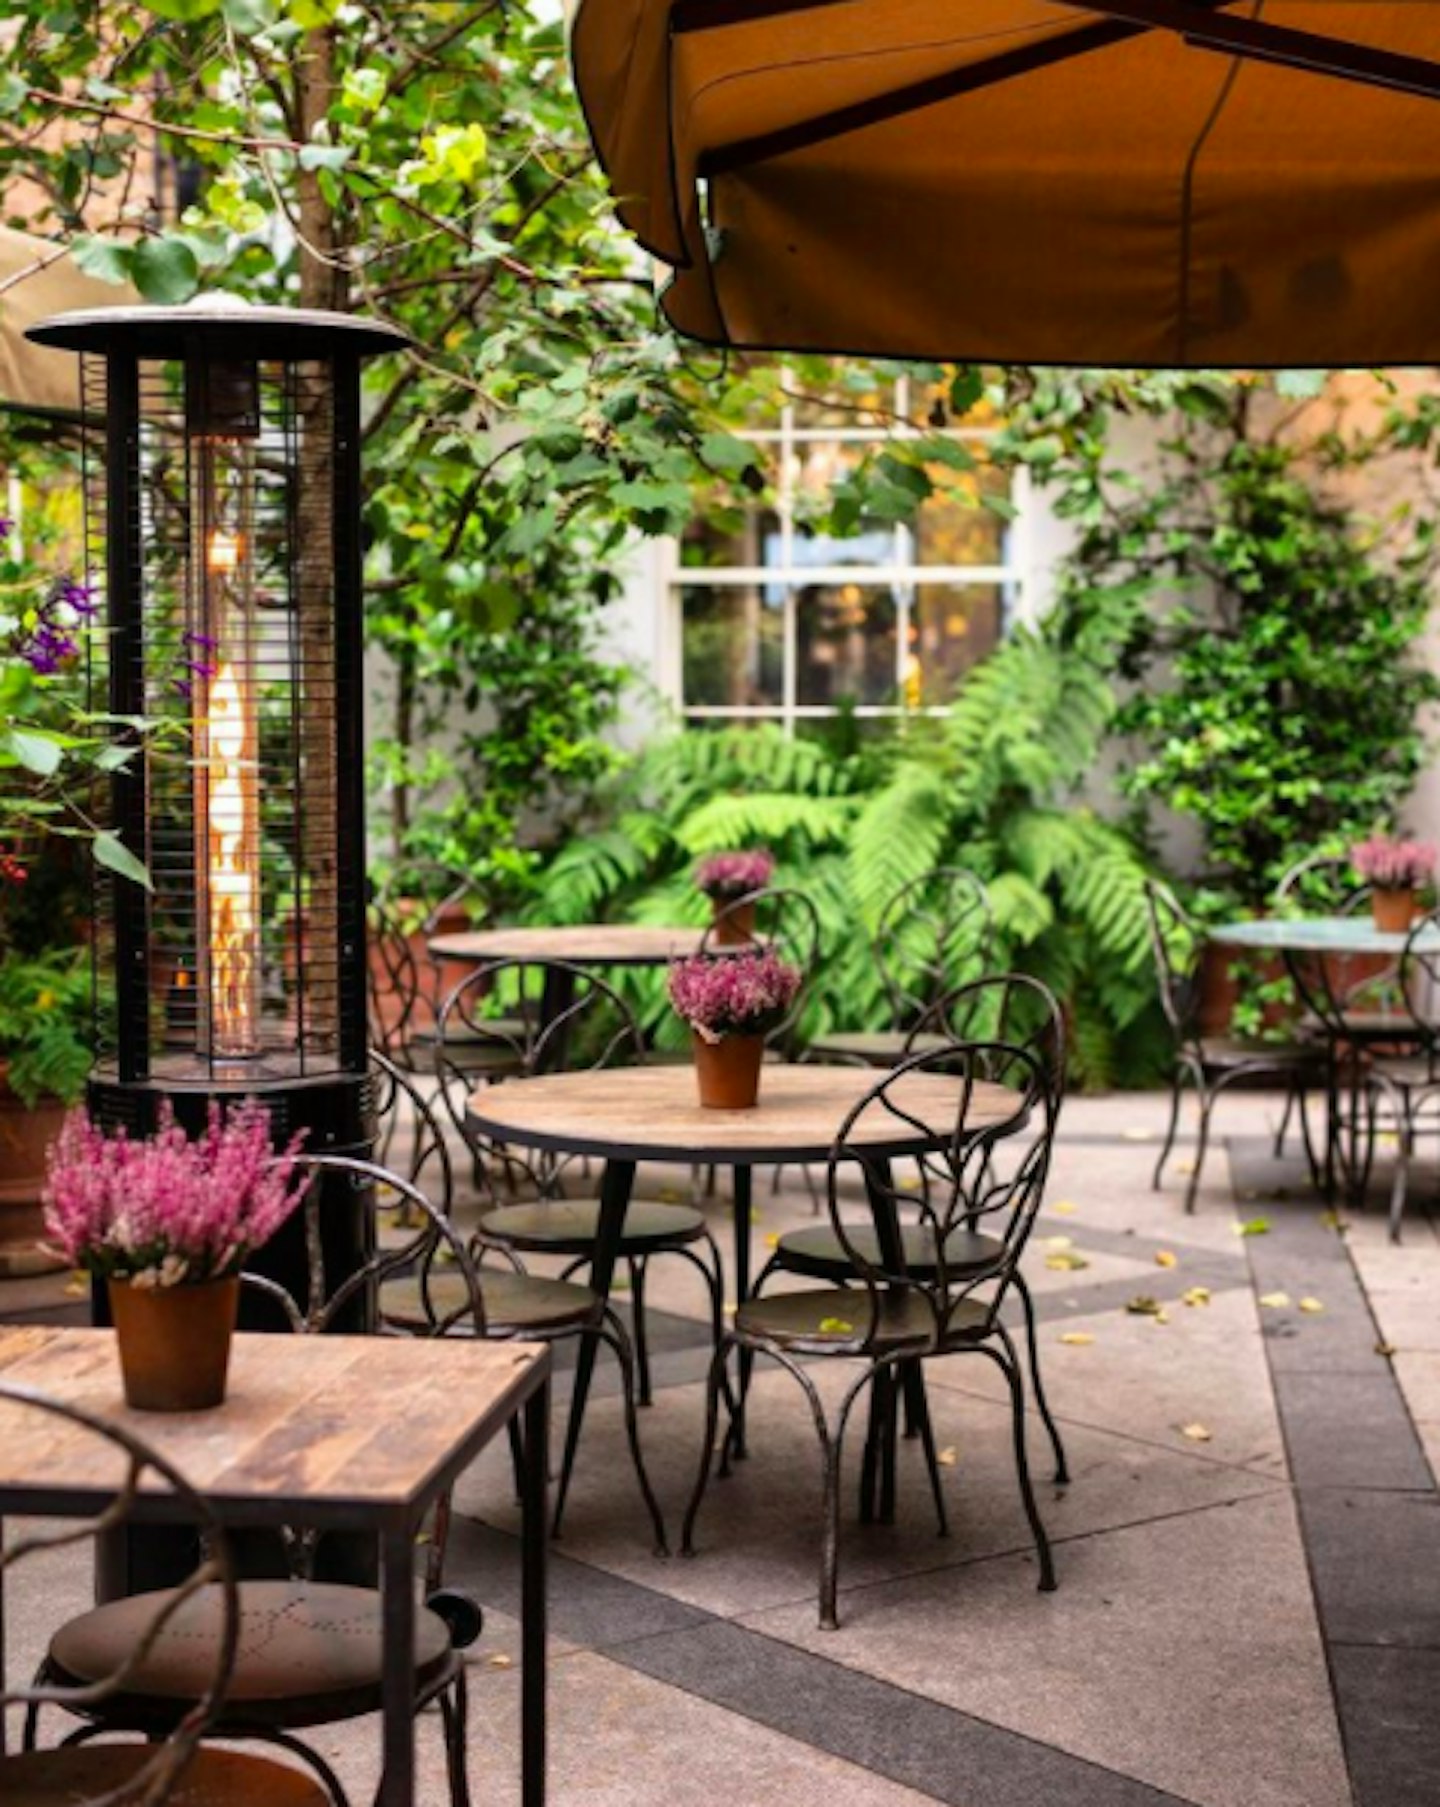 Best Restaurants With Outdoor Seating in London - Grazia